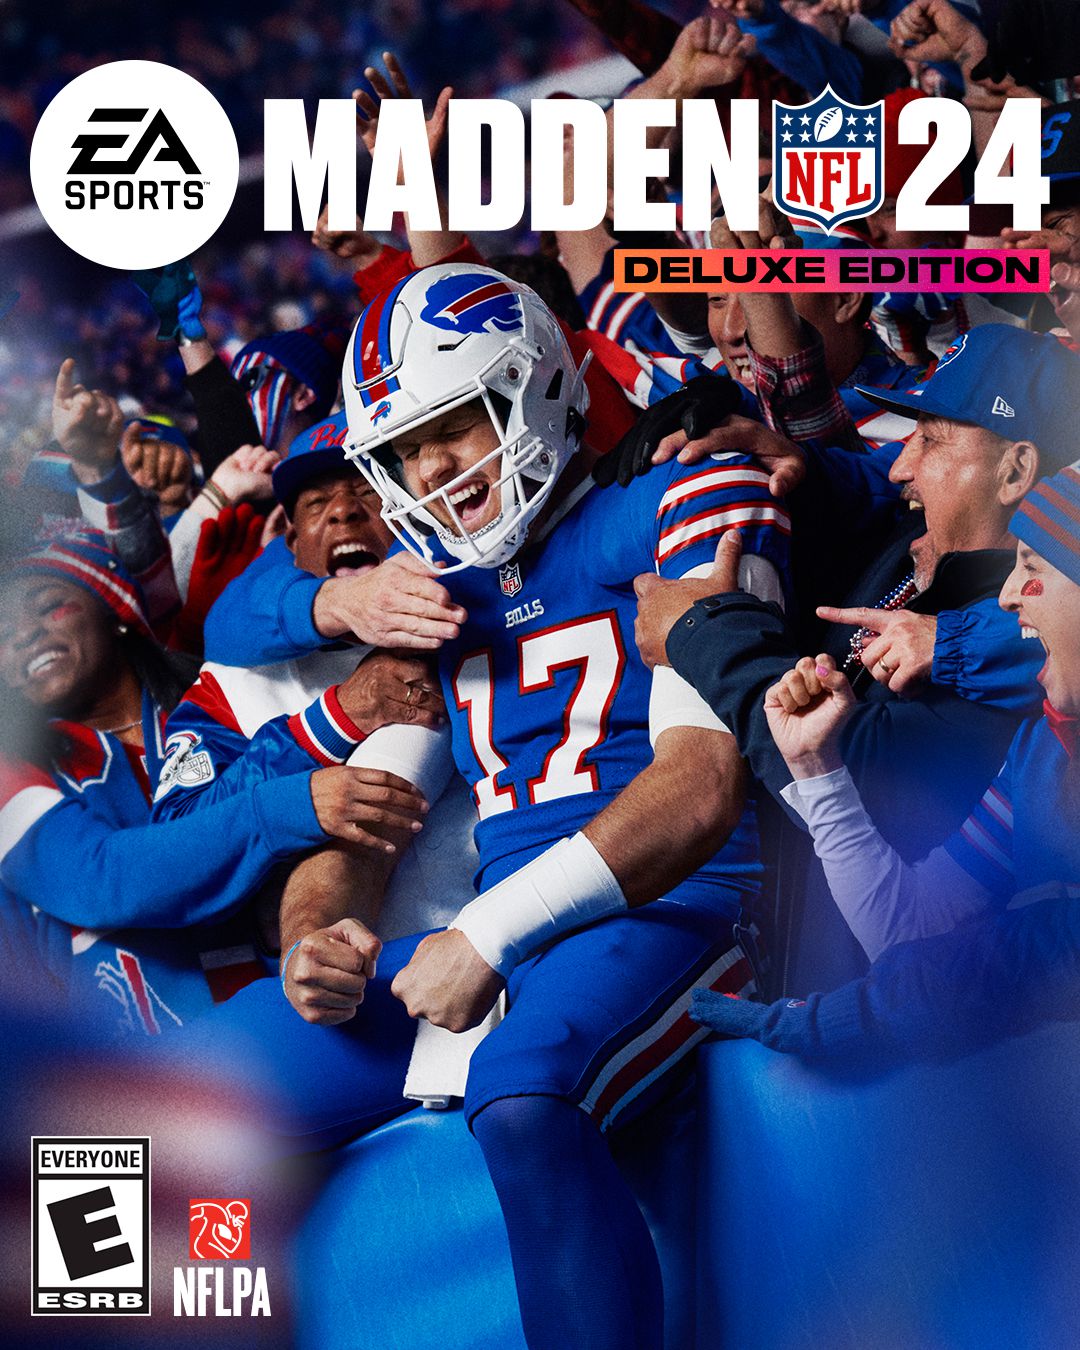 La copertina dell'edizione deluxe di Madden NFL 24;  Josh Allen dei Buffalo Bills sta festeggiando con i fan sugli spalti